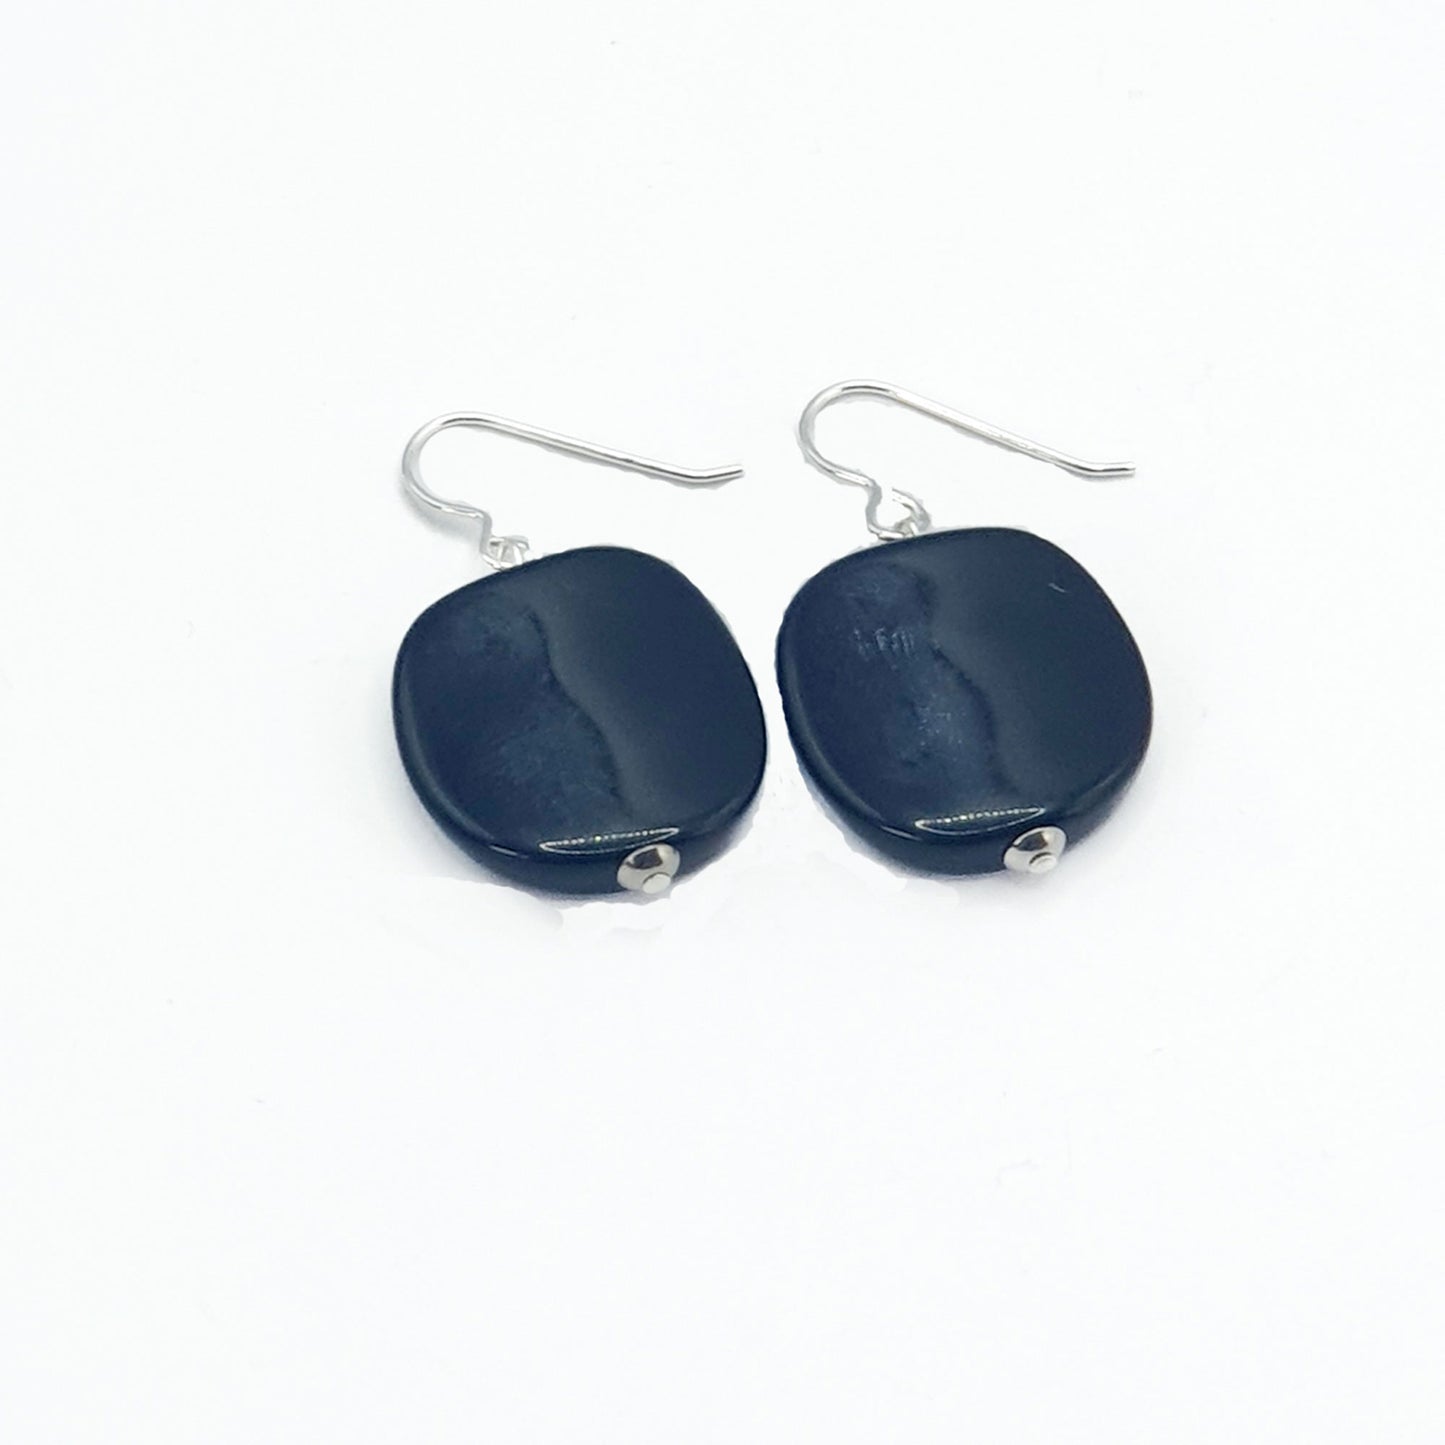 Resin pebble earrings in black